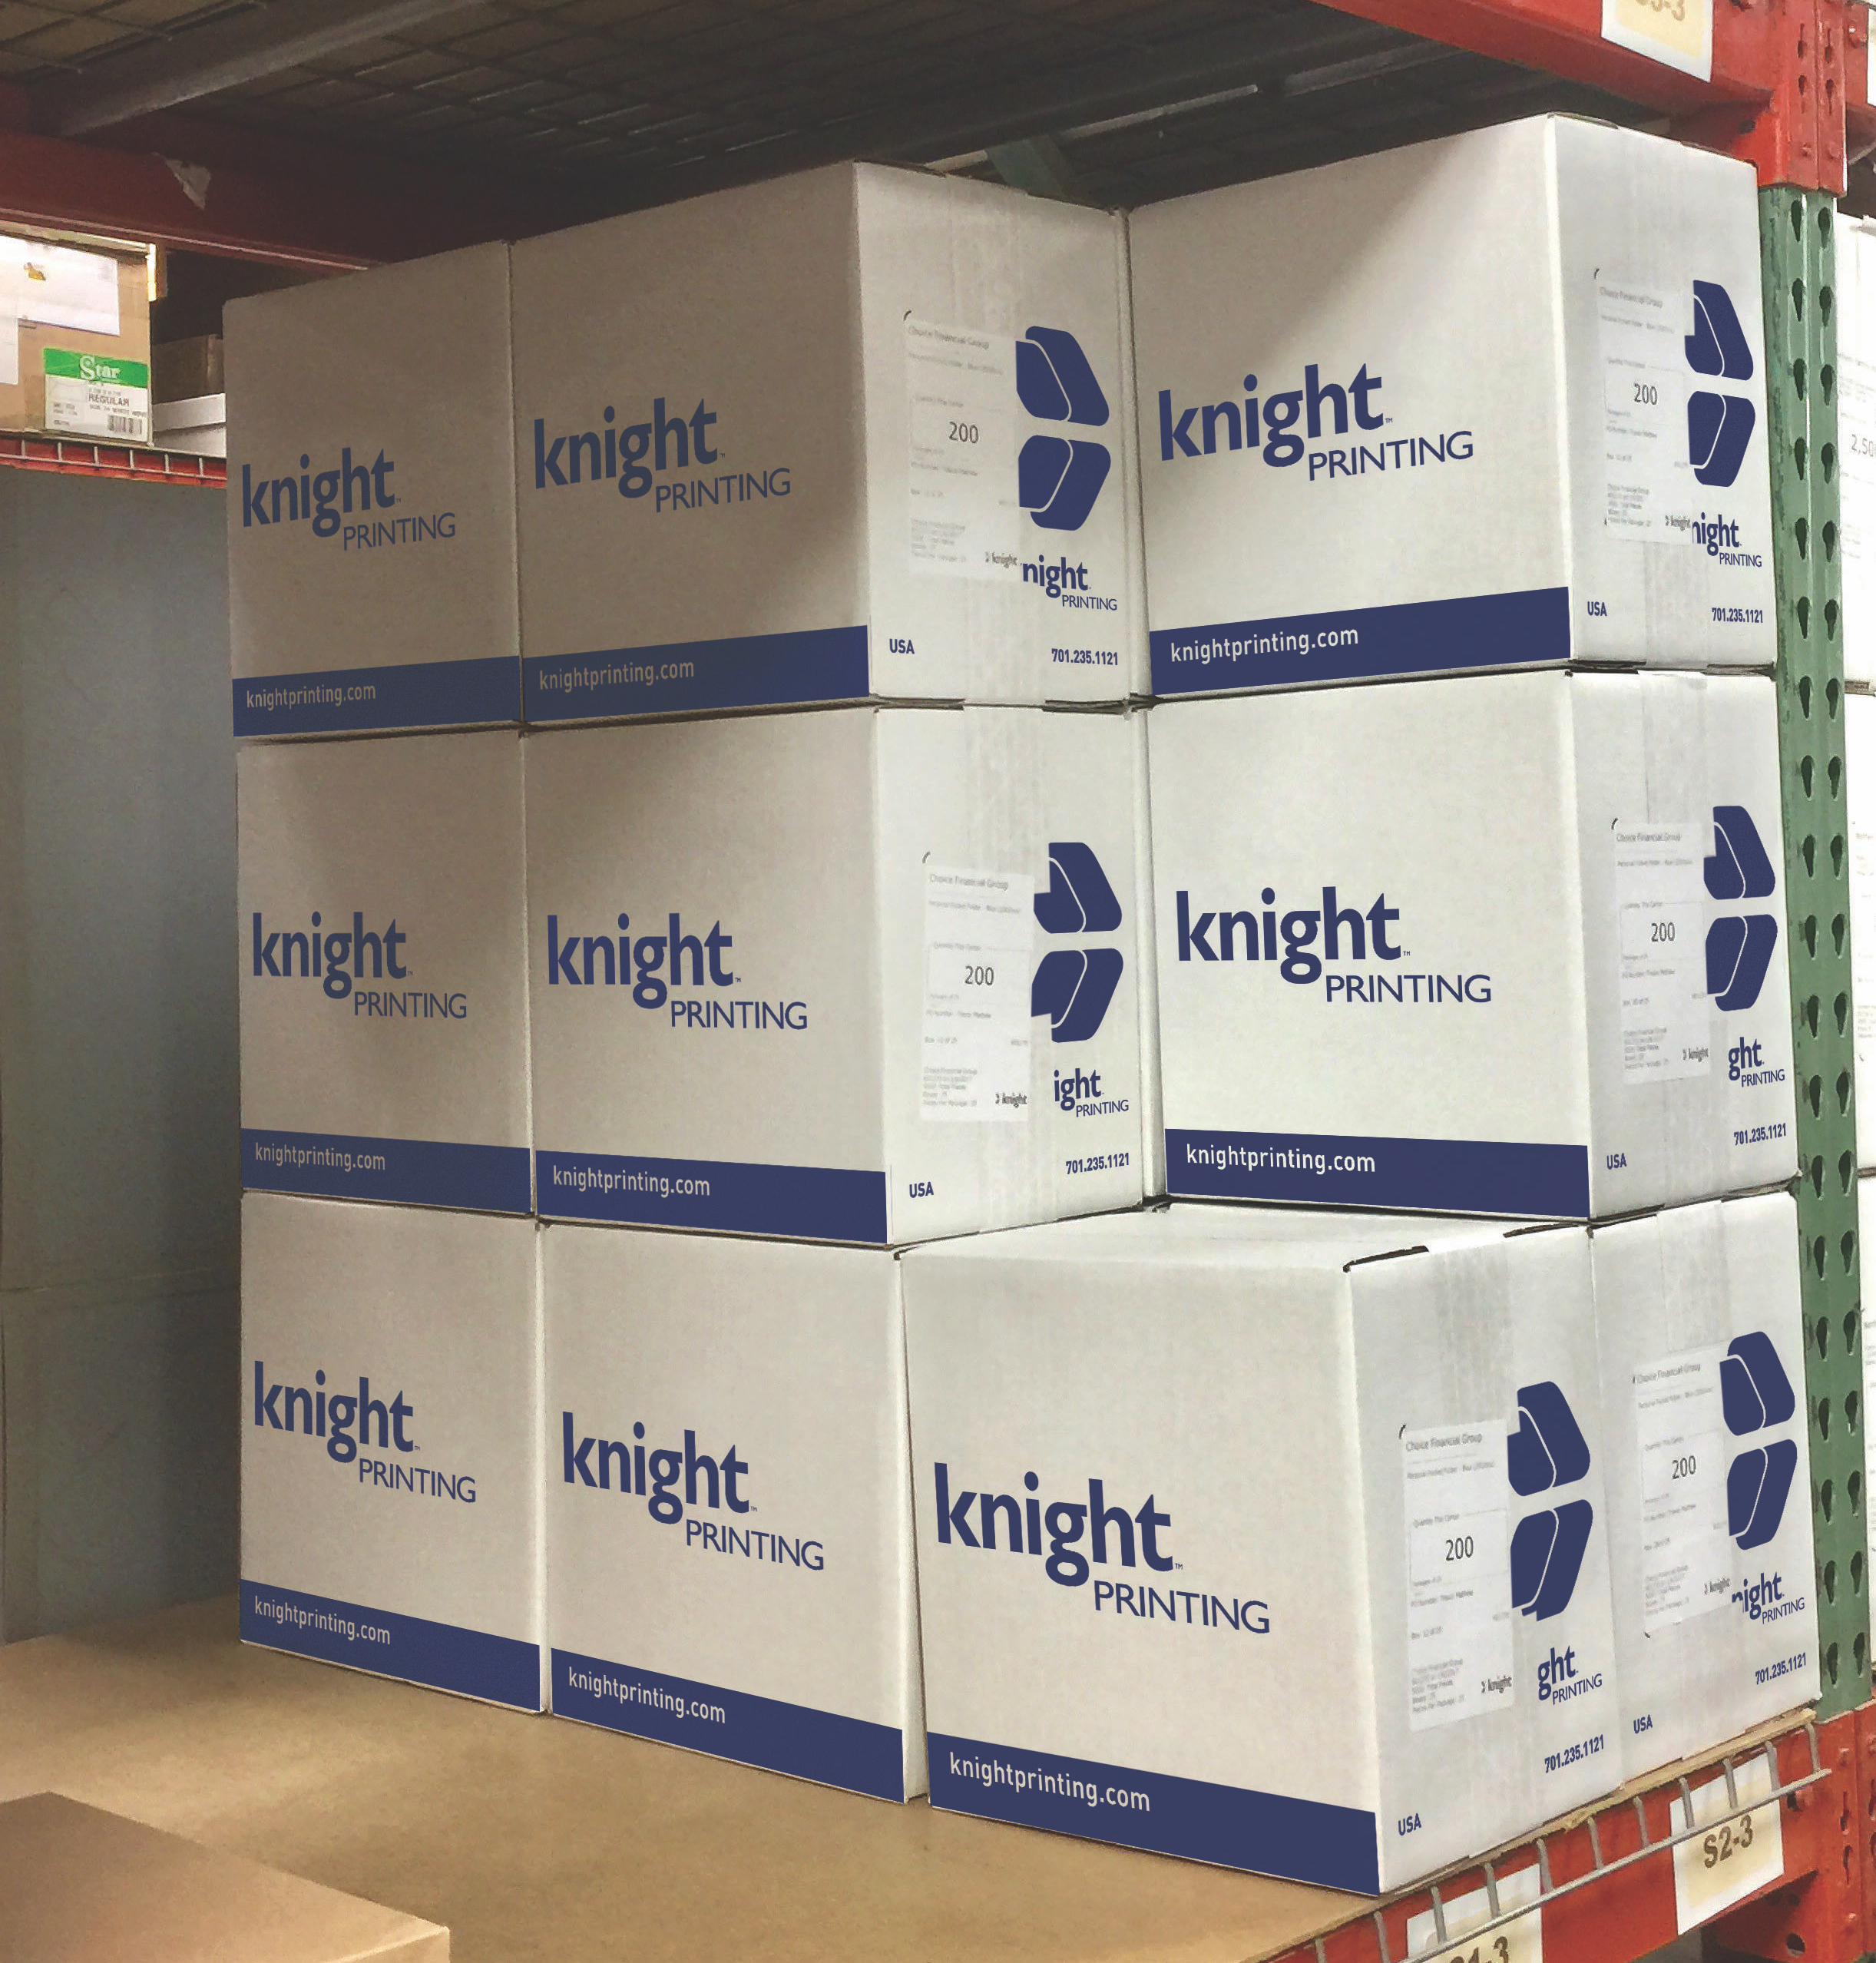 knight-fulfillment-new-box-design.jpg